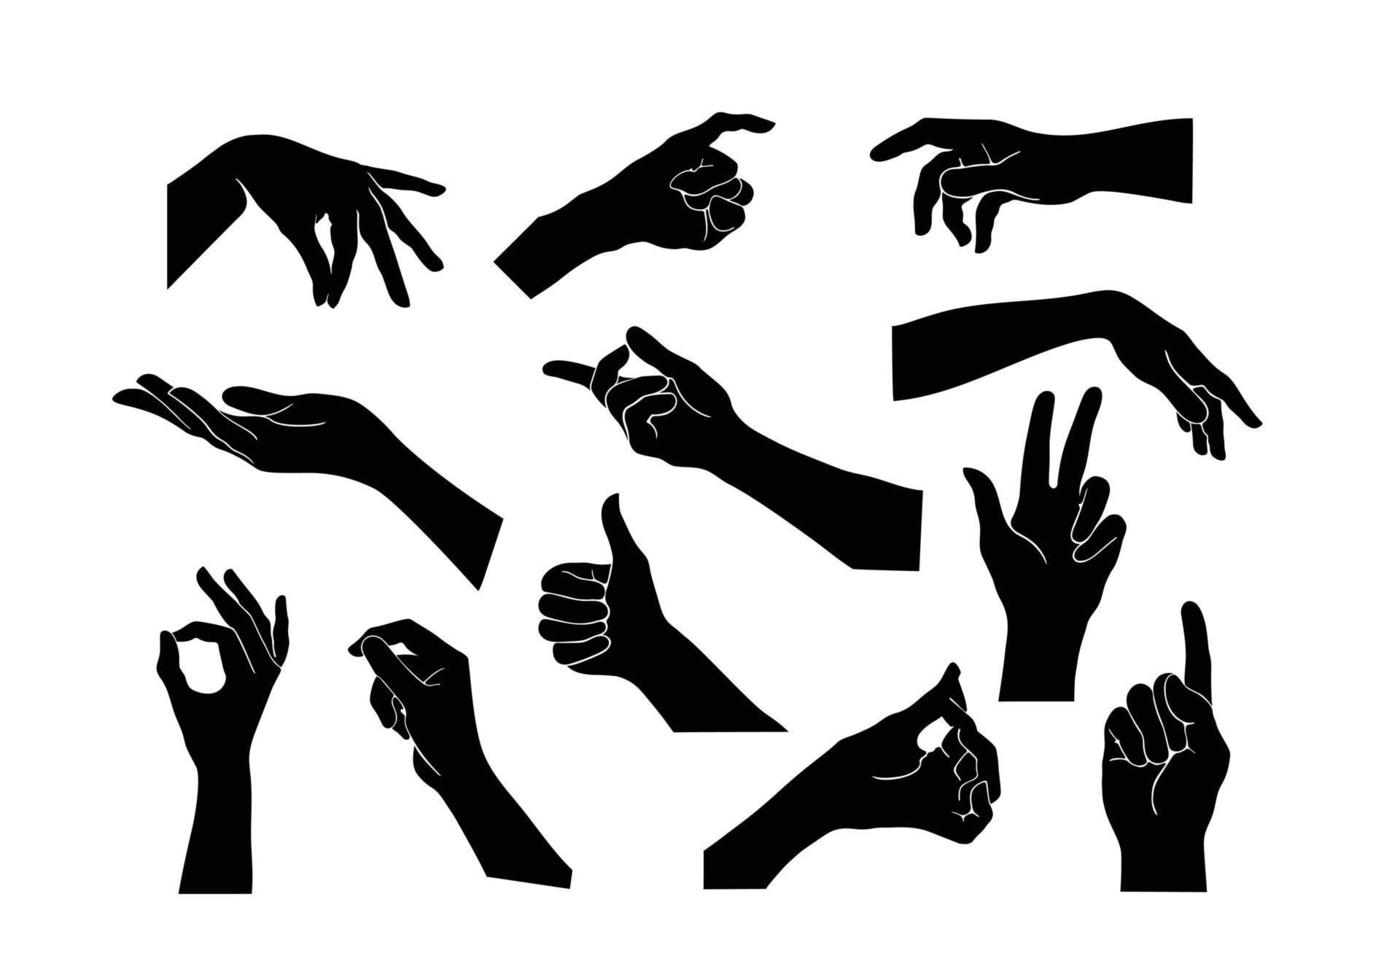 ensemble de collection de vecteurs de gestes de la main. geste de la main noire comme une silhouette ou une ombre de mains. illustrations de mouvement du corps humain en noir. vecteur